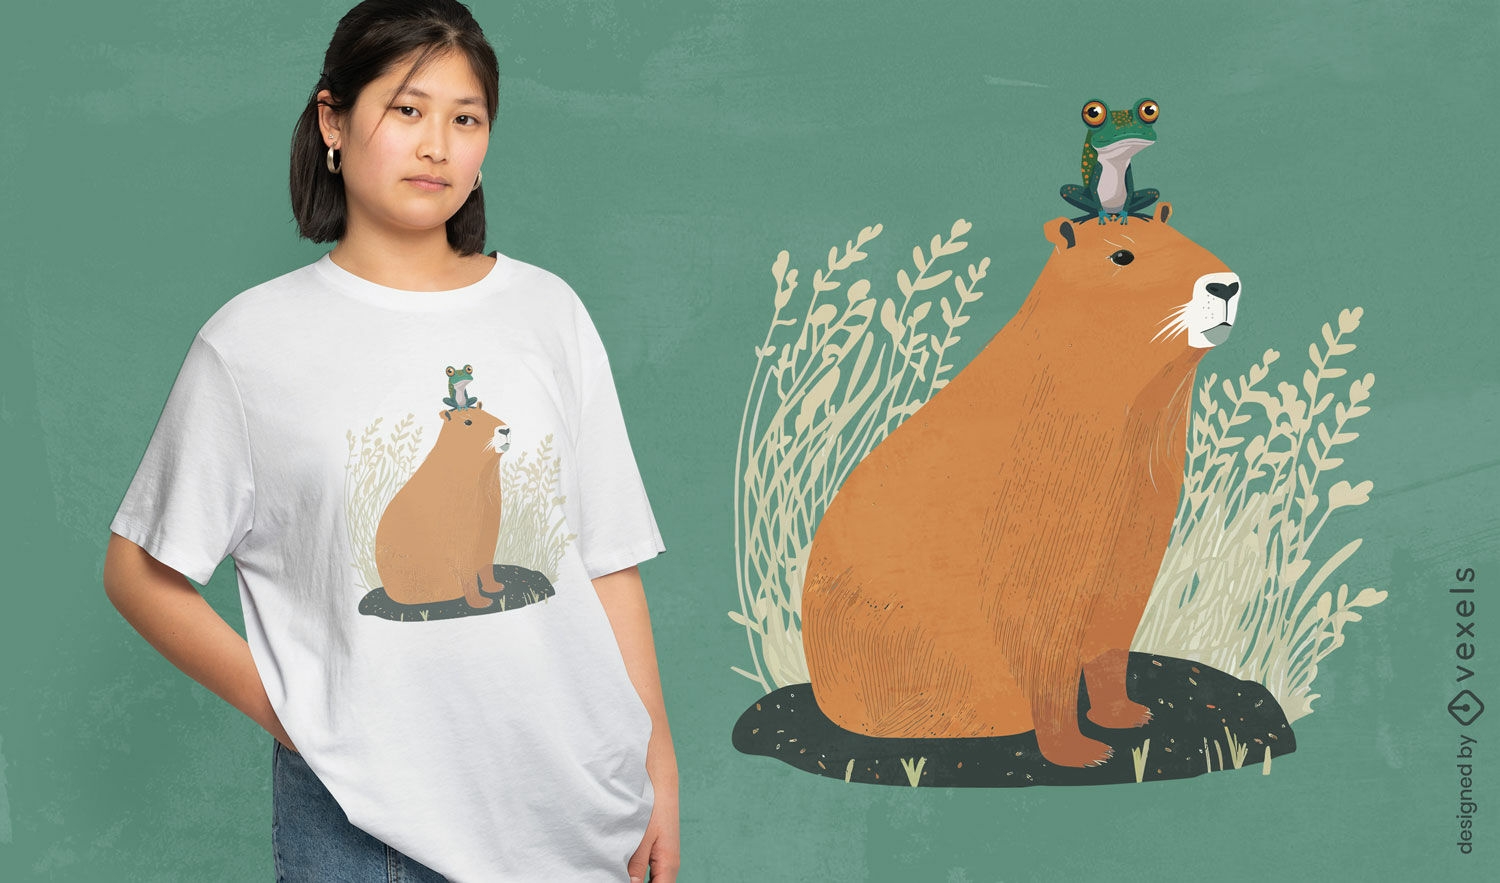 Capybara- und Frosch-T-Shirt-Design